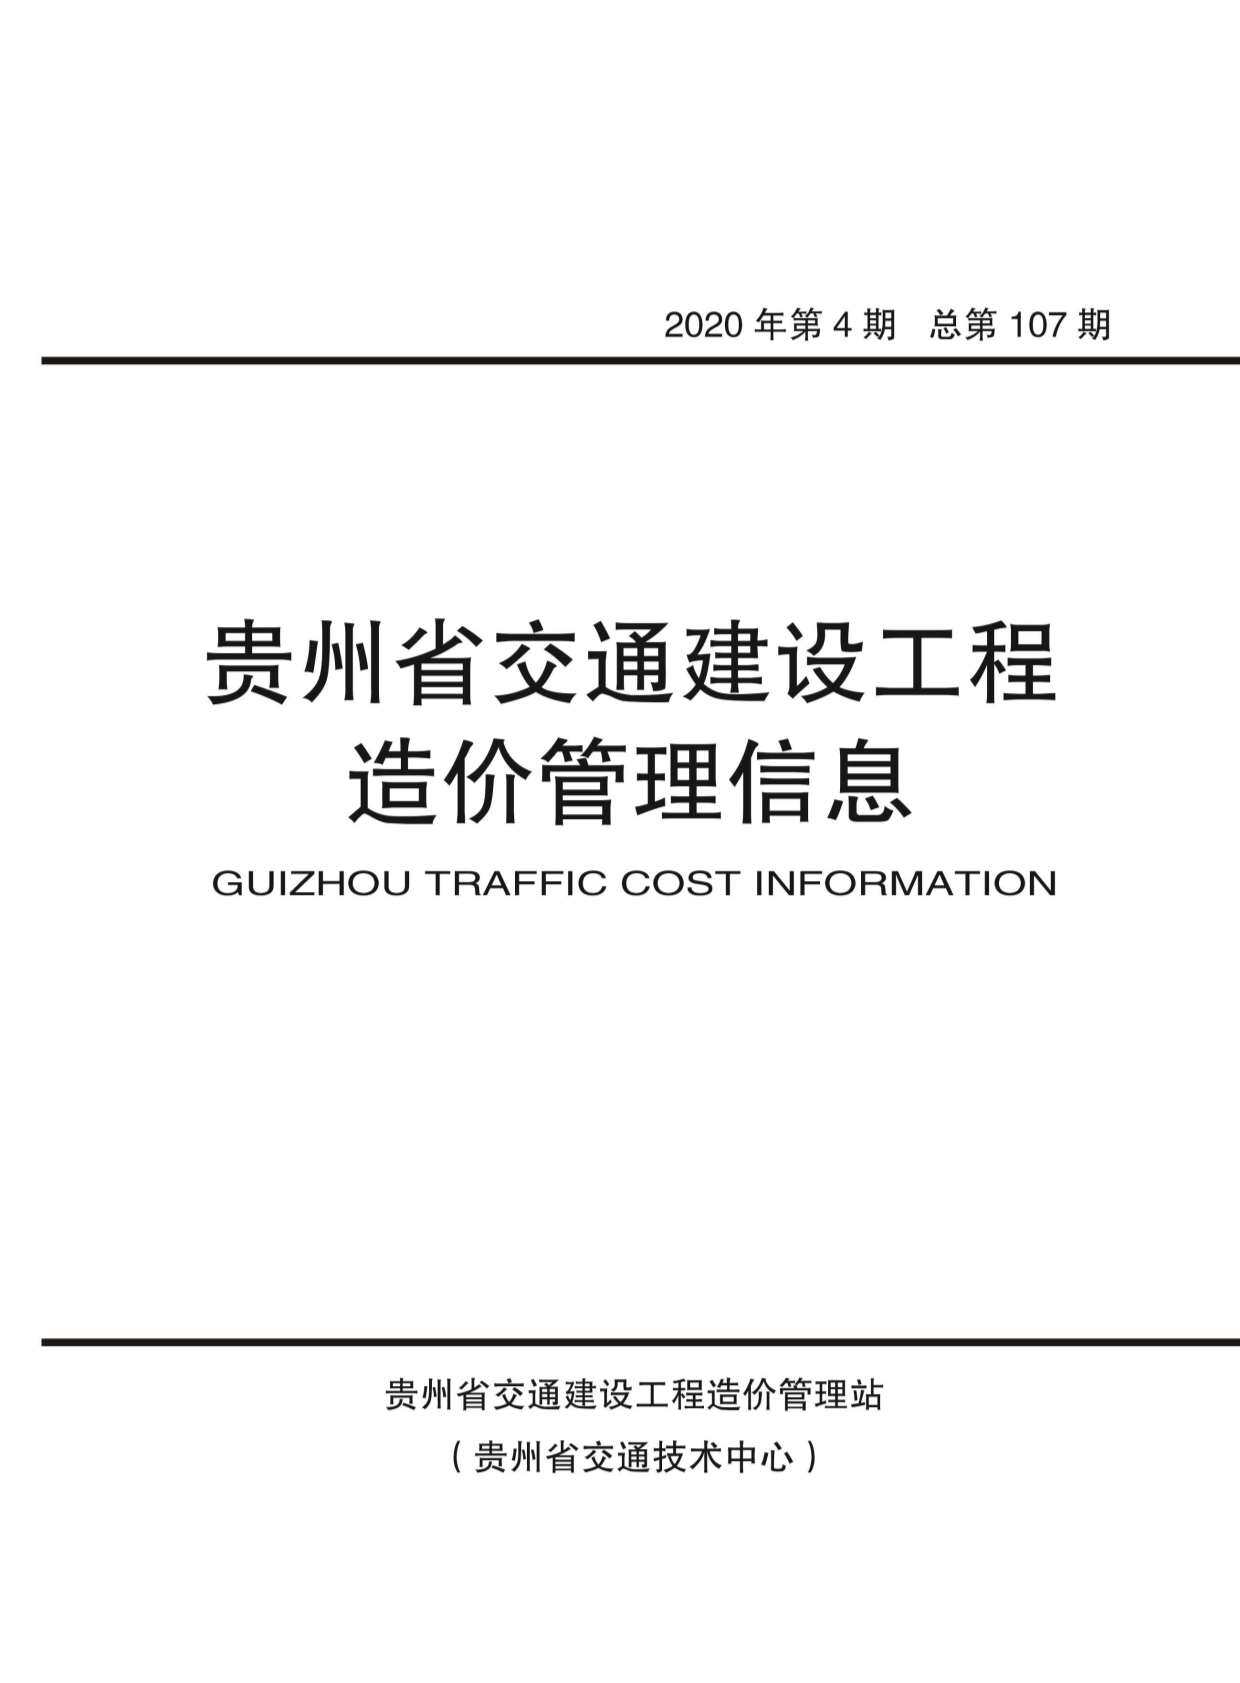 贵州省2020年4月交通工程造价信息期刊